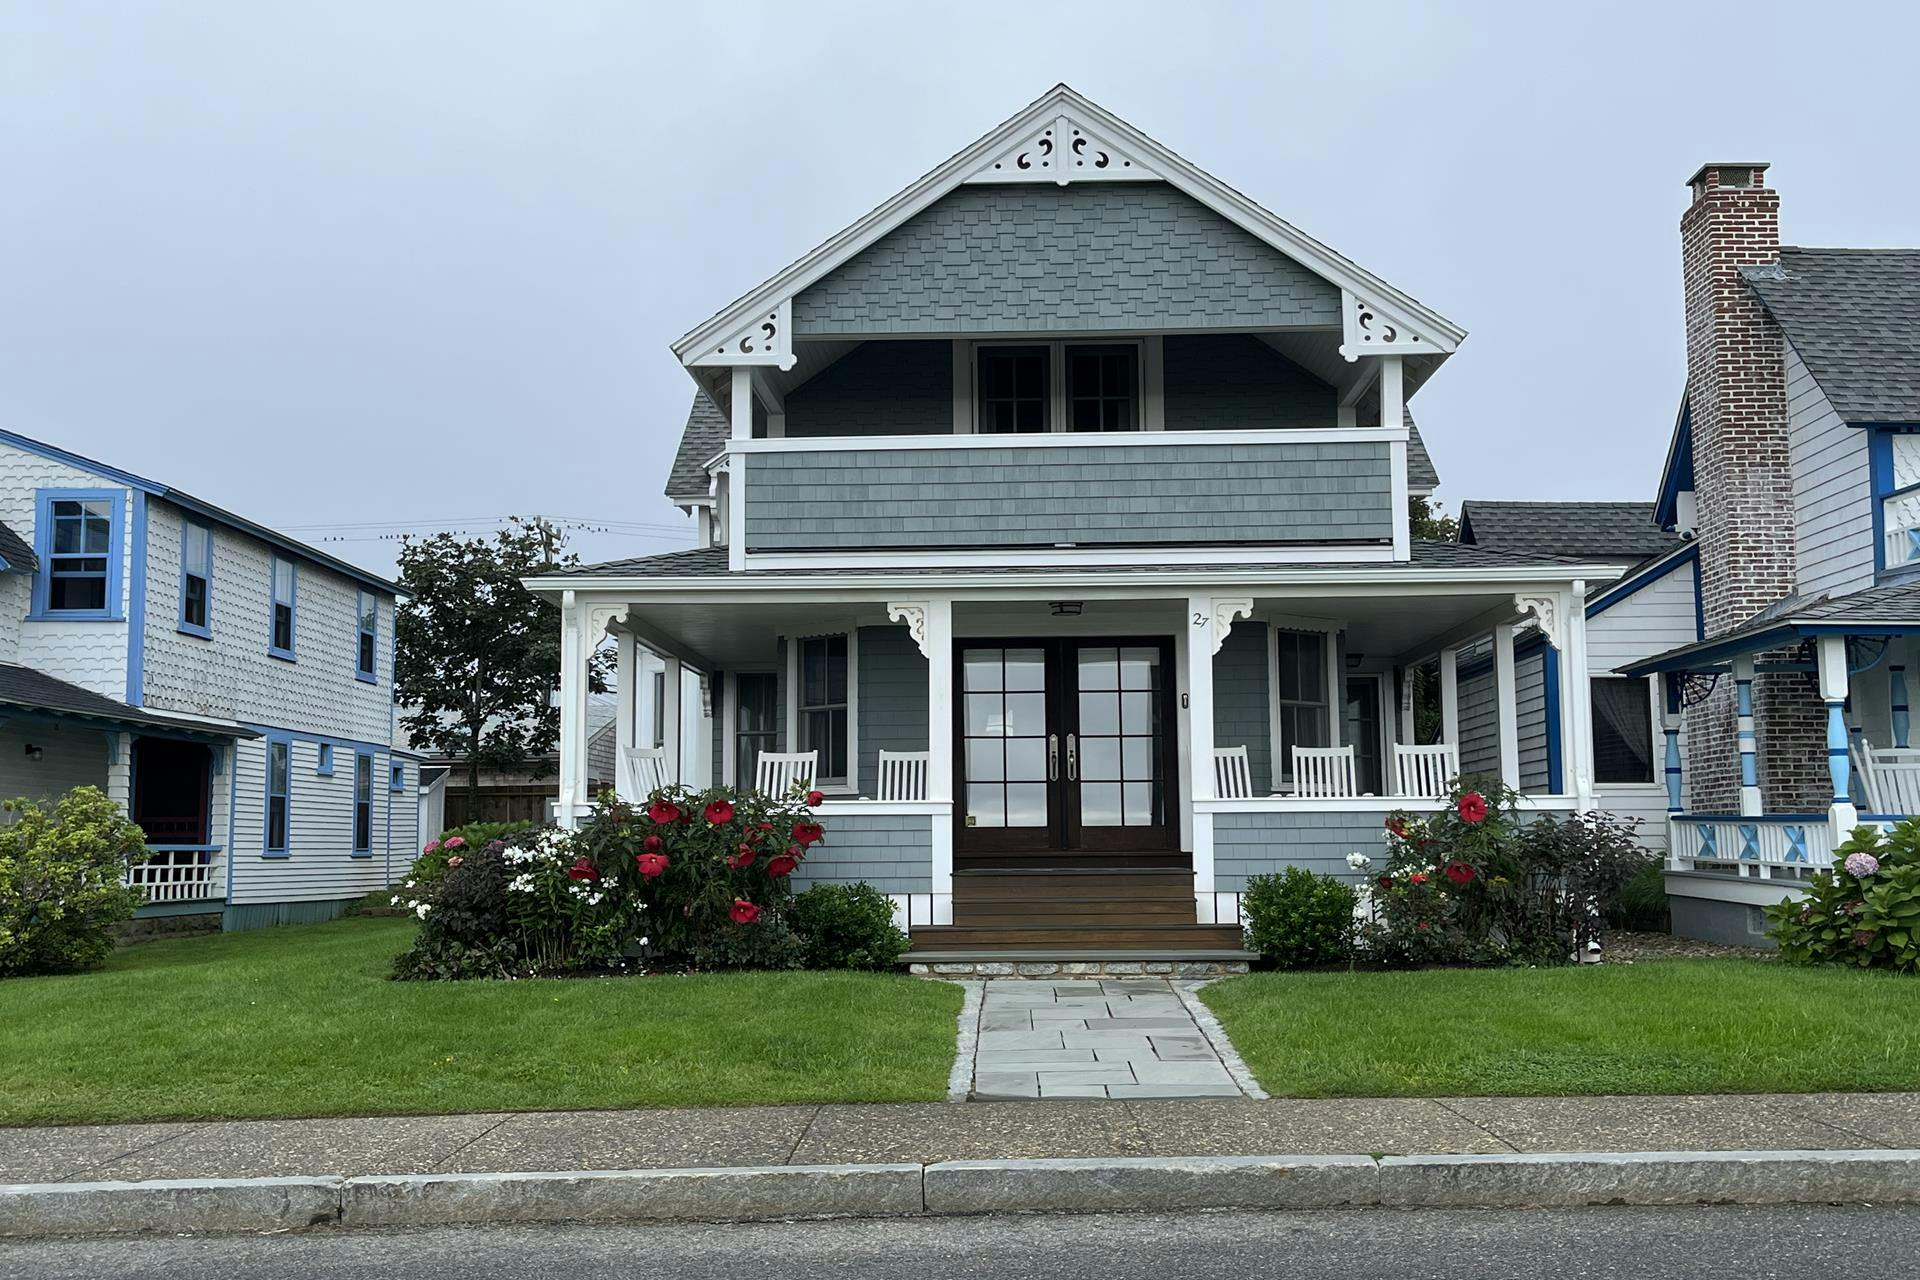 House on 27 Ocean Avenue in Oak Bluffs